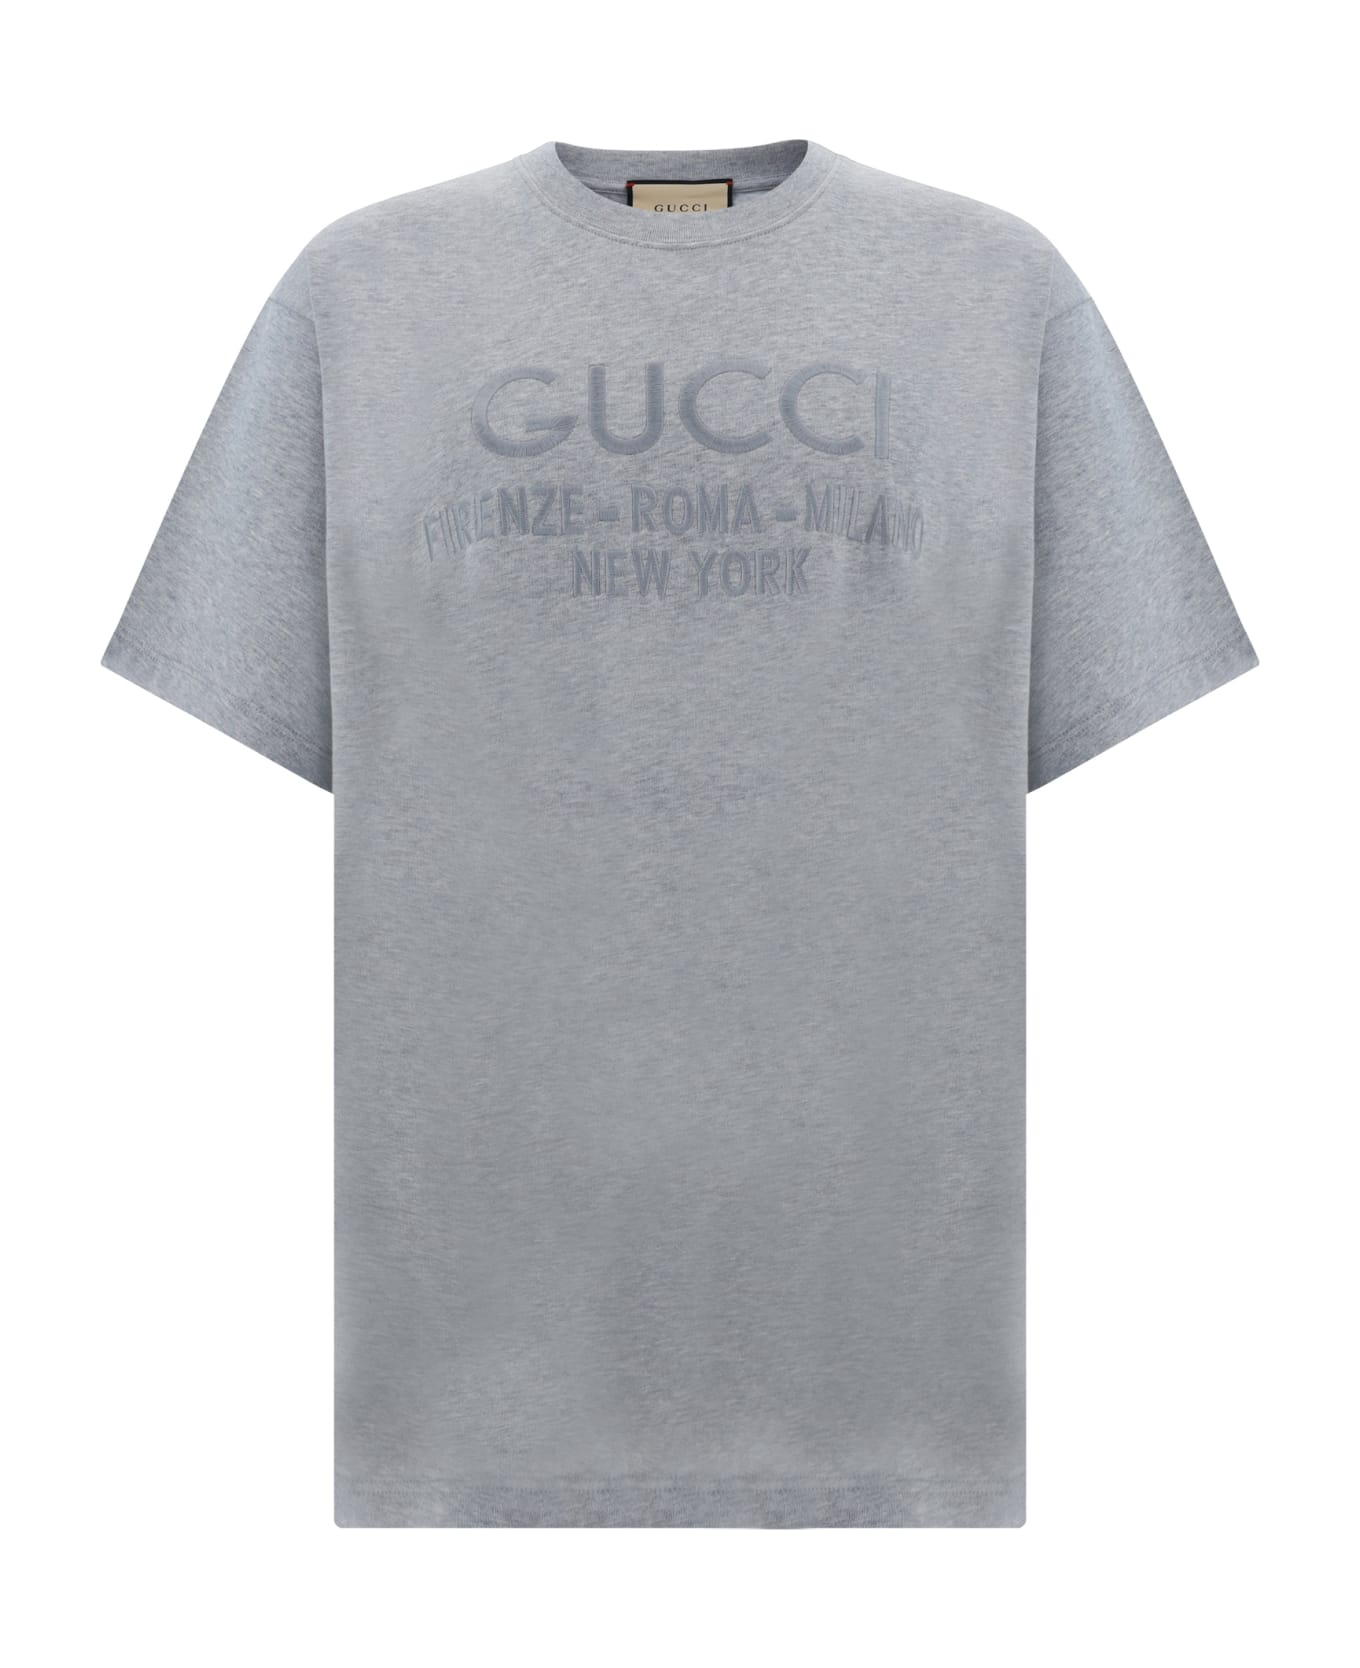 Gucci T-shirt | italist